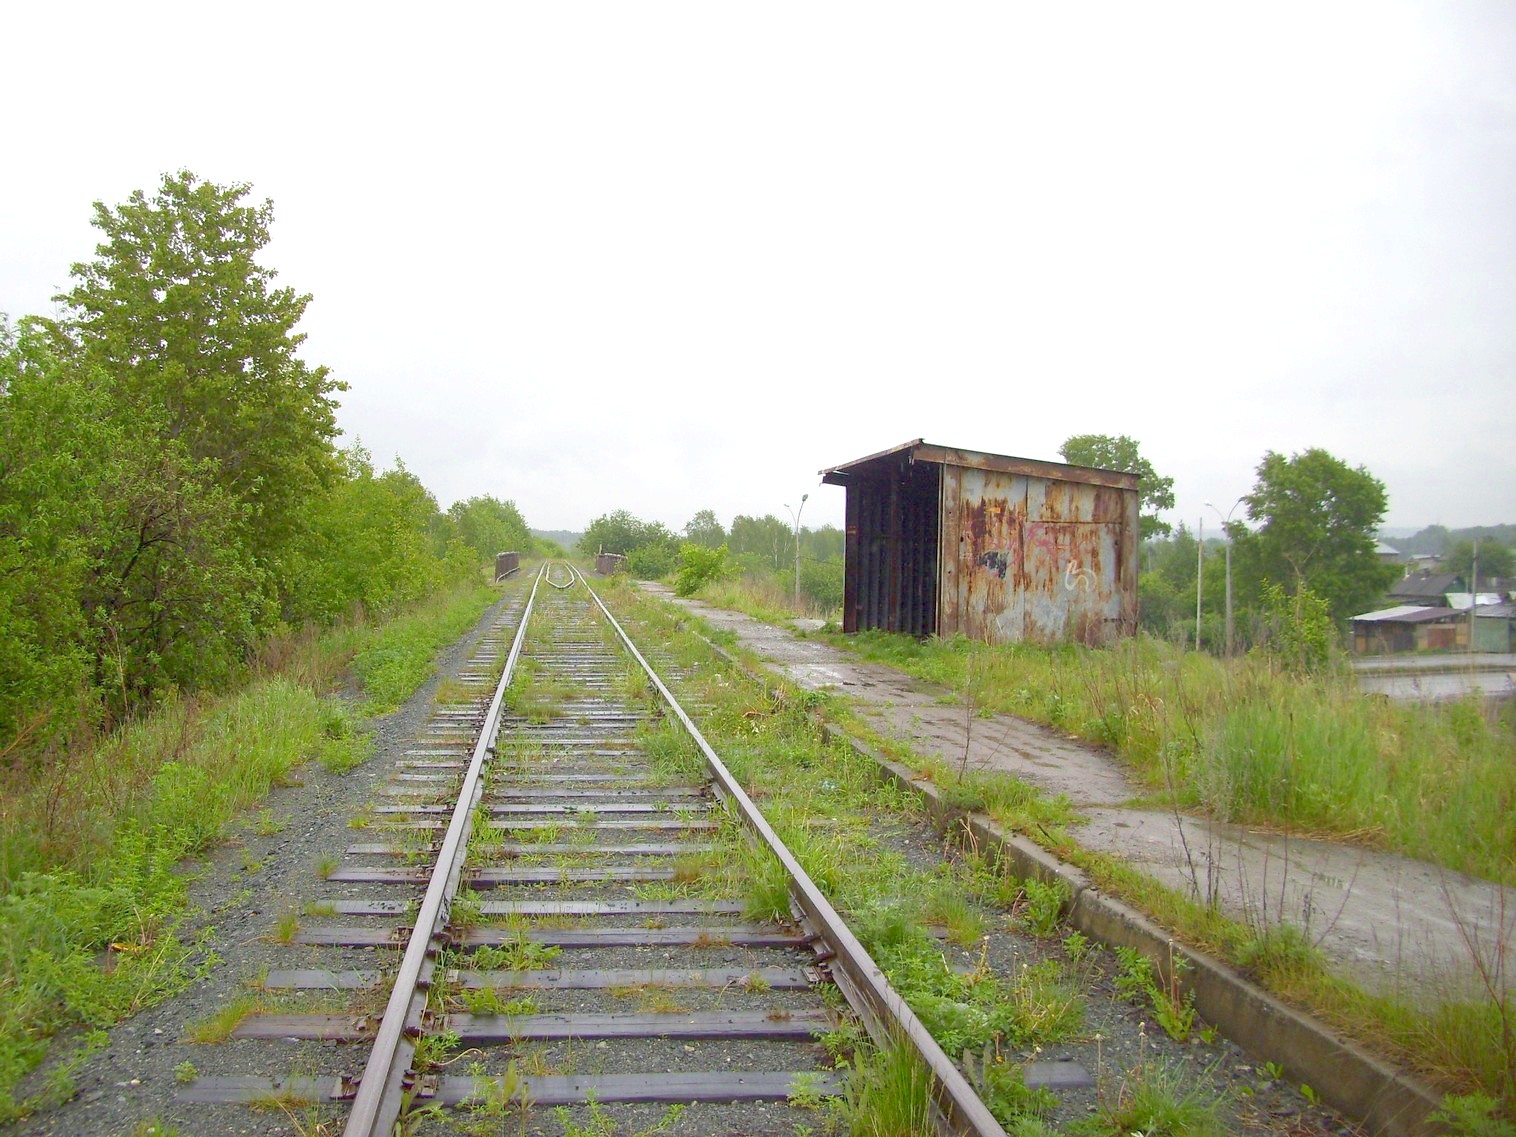 Железнодорожная линия предприятия железнодорожного транспорта завода «Уралмаш»  —  фотографии, сделанные в 2010 году (часть 7)